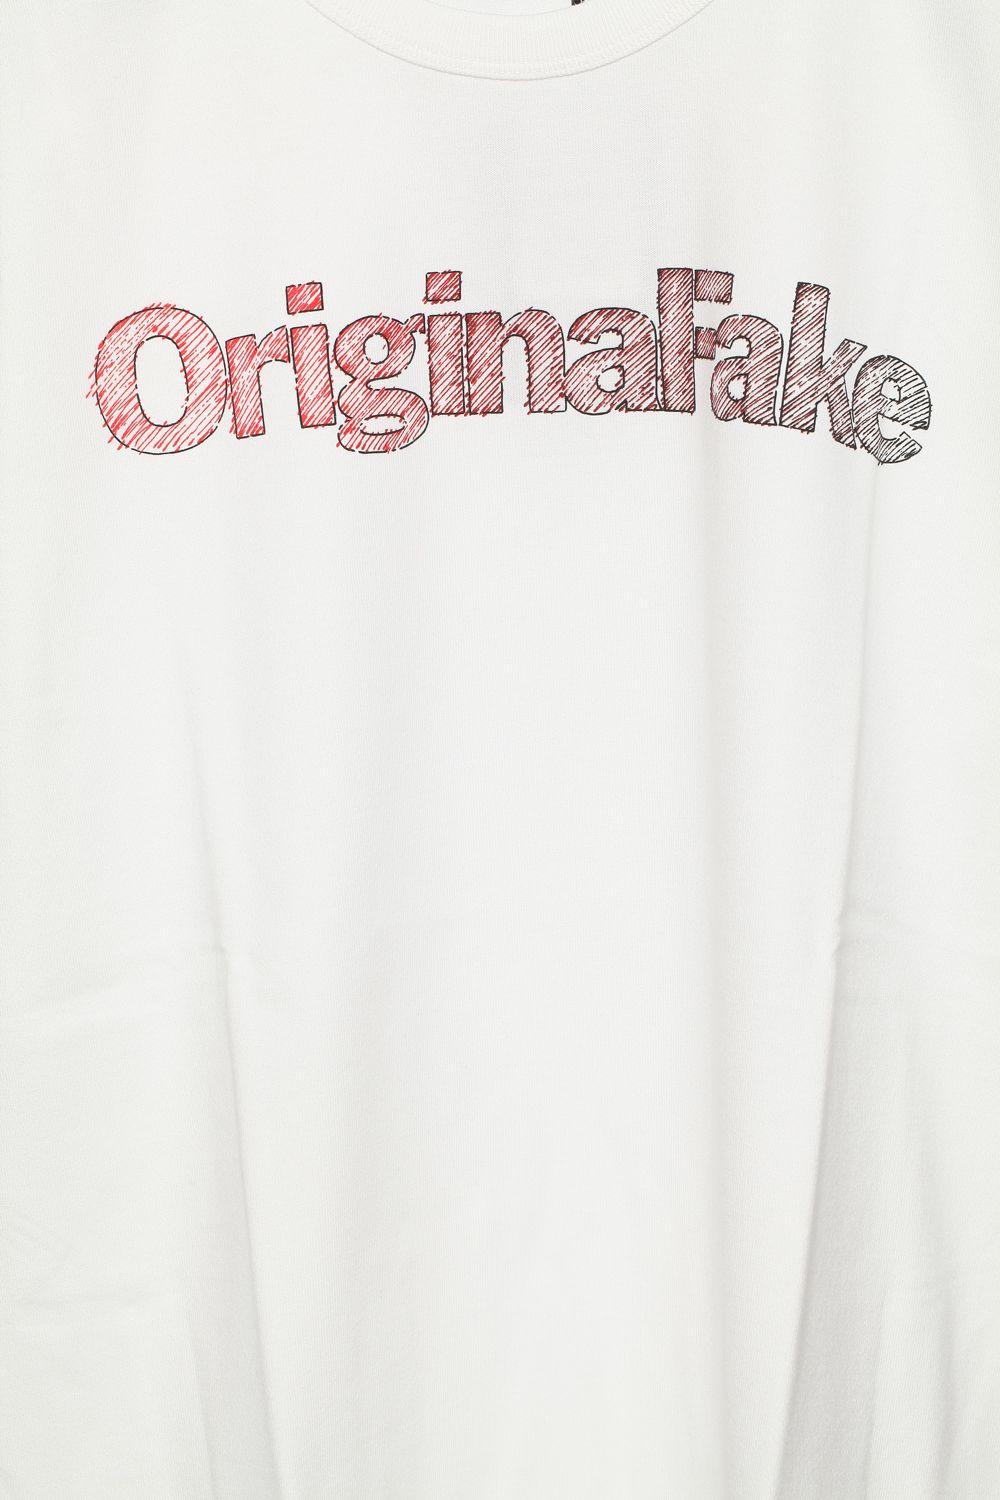 Original Fake Logo - Norse Store - T-shirts - Original Fake - Drawing Logo